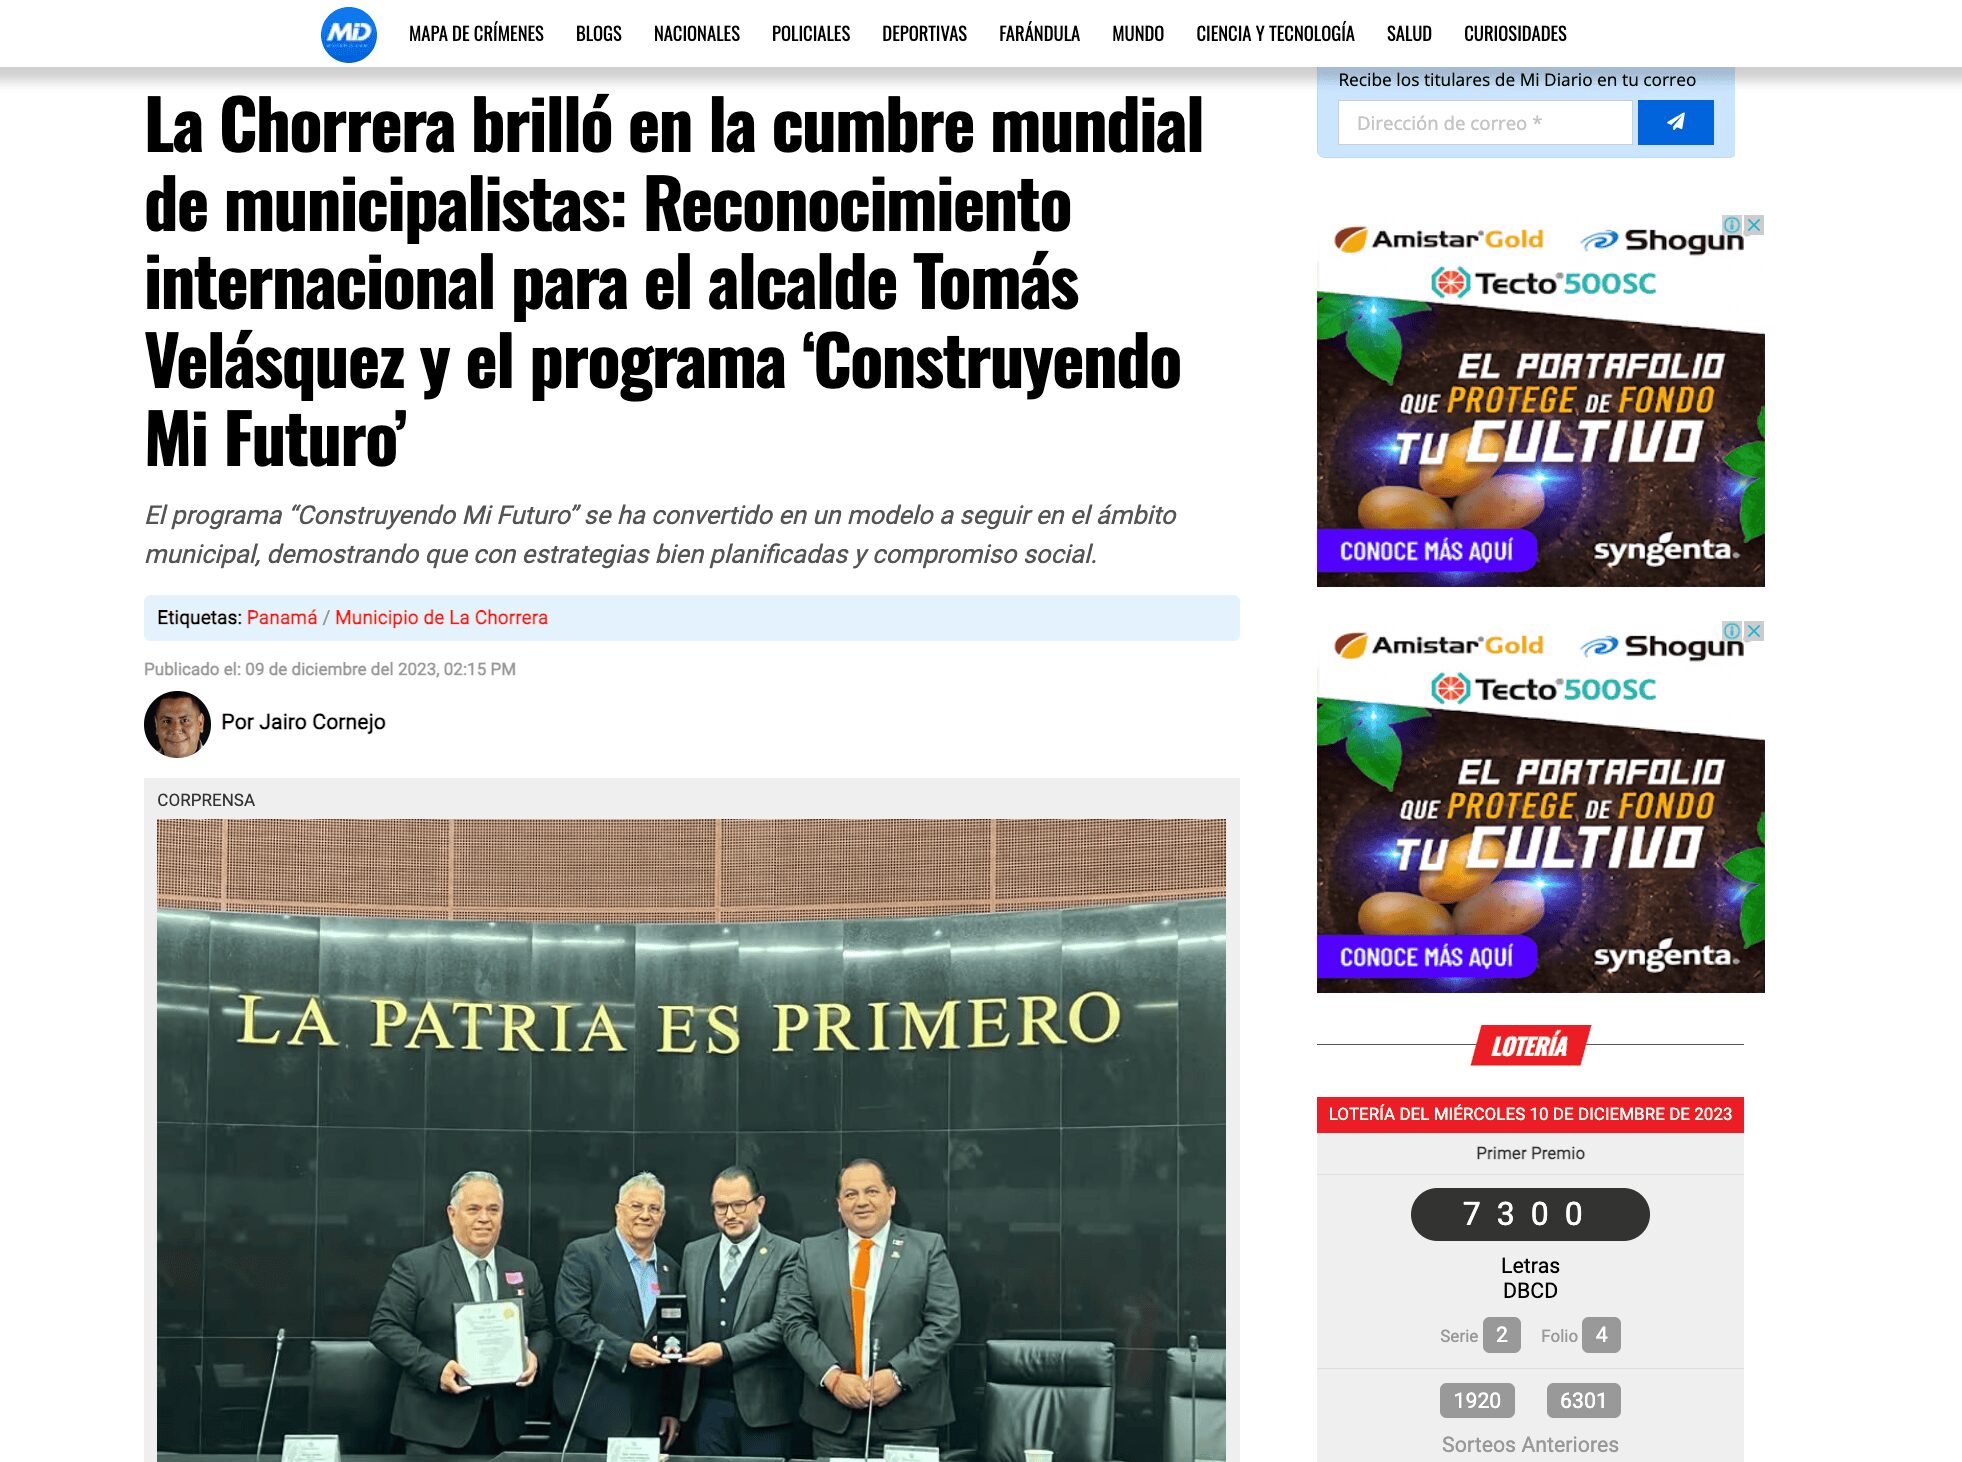 La Chorrera brilló en la Cumbre Mundial de Municipalistas en el Senado de México